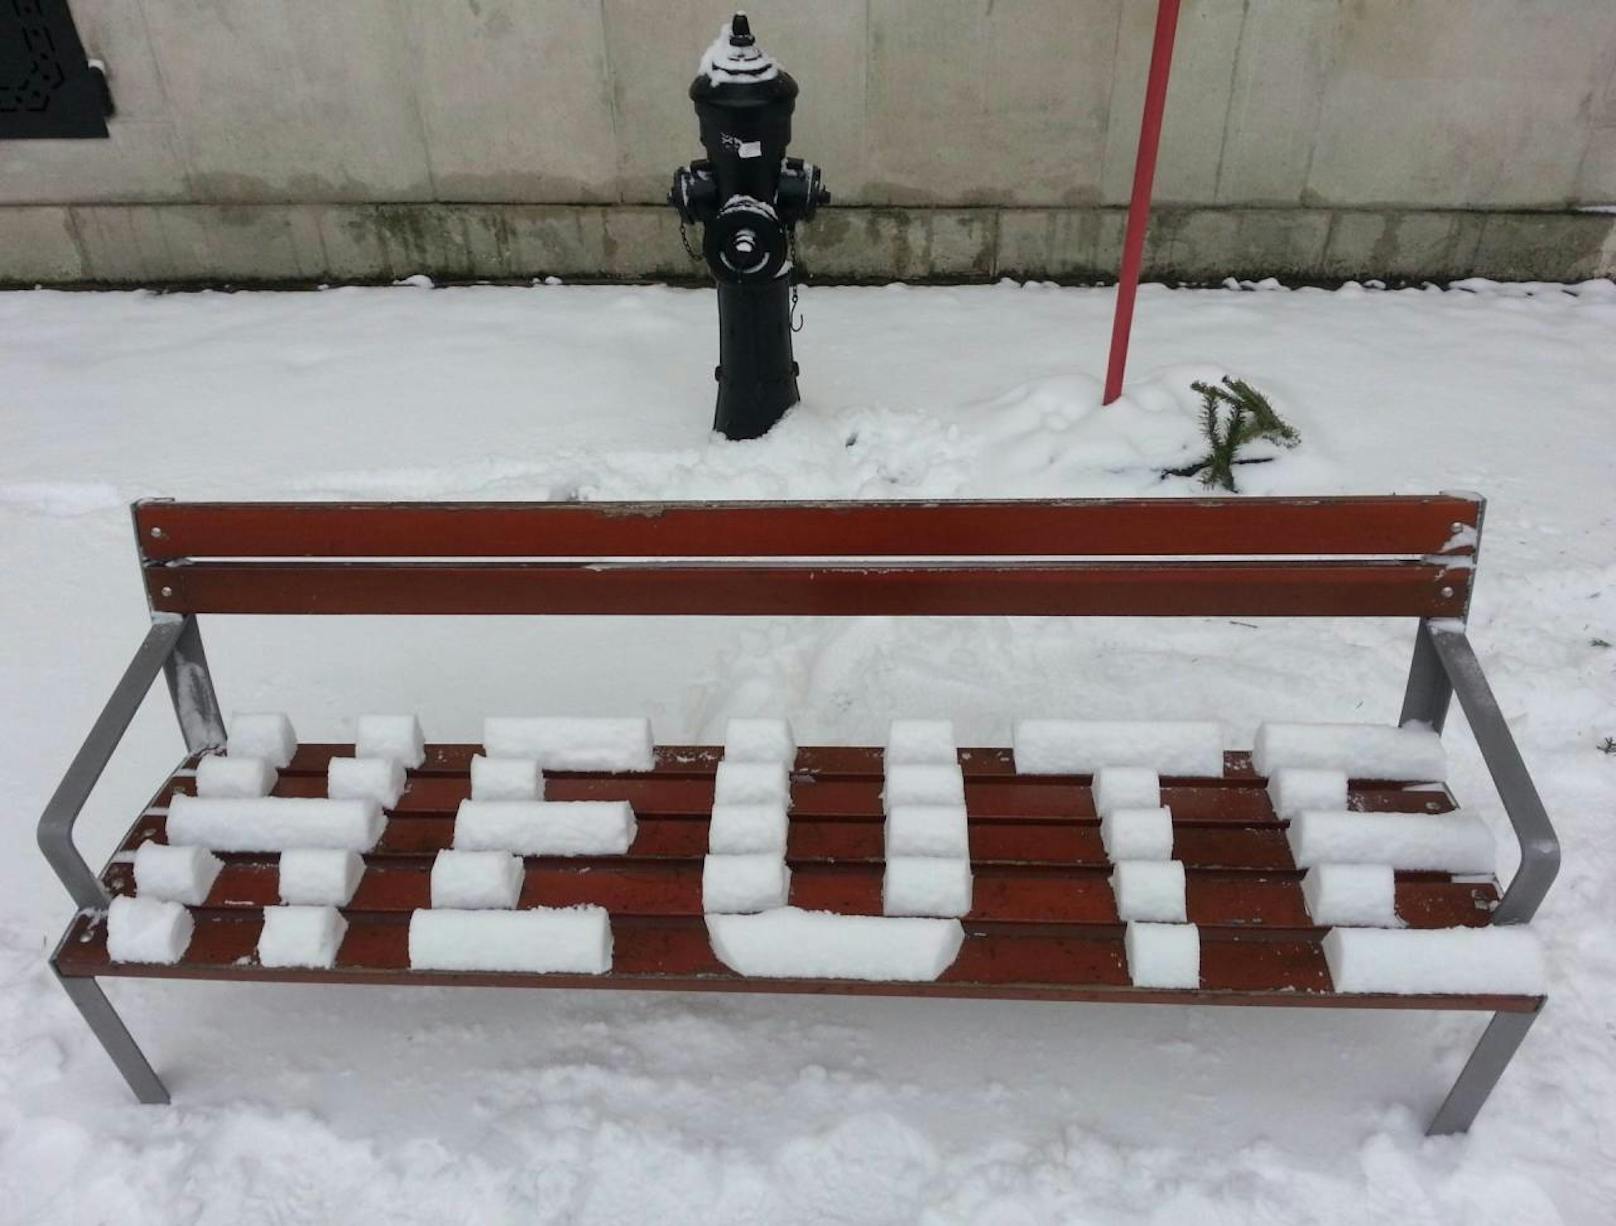 Teilen Sie Ihr Schnee-Foto per "Heute"-App!